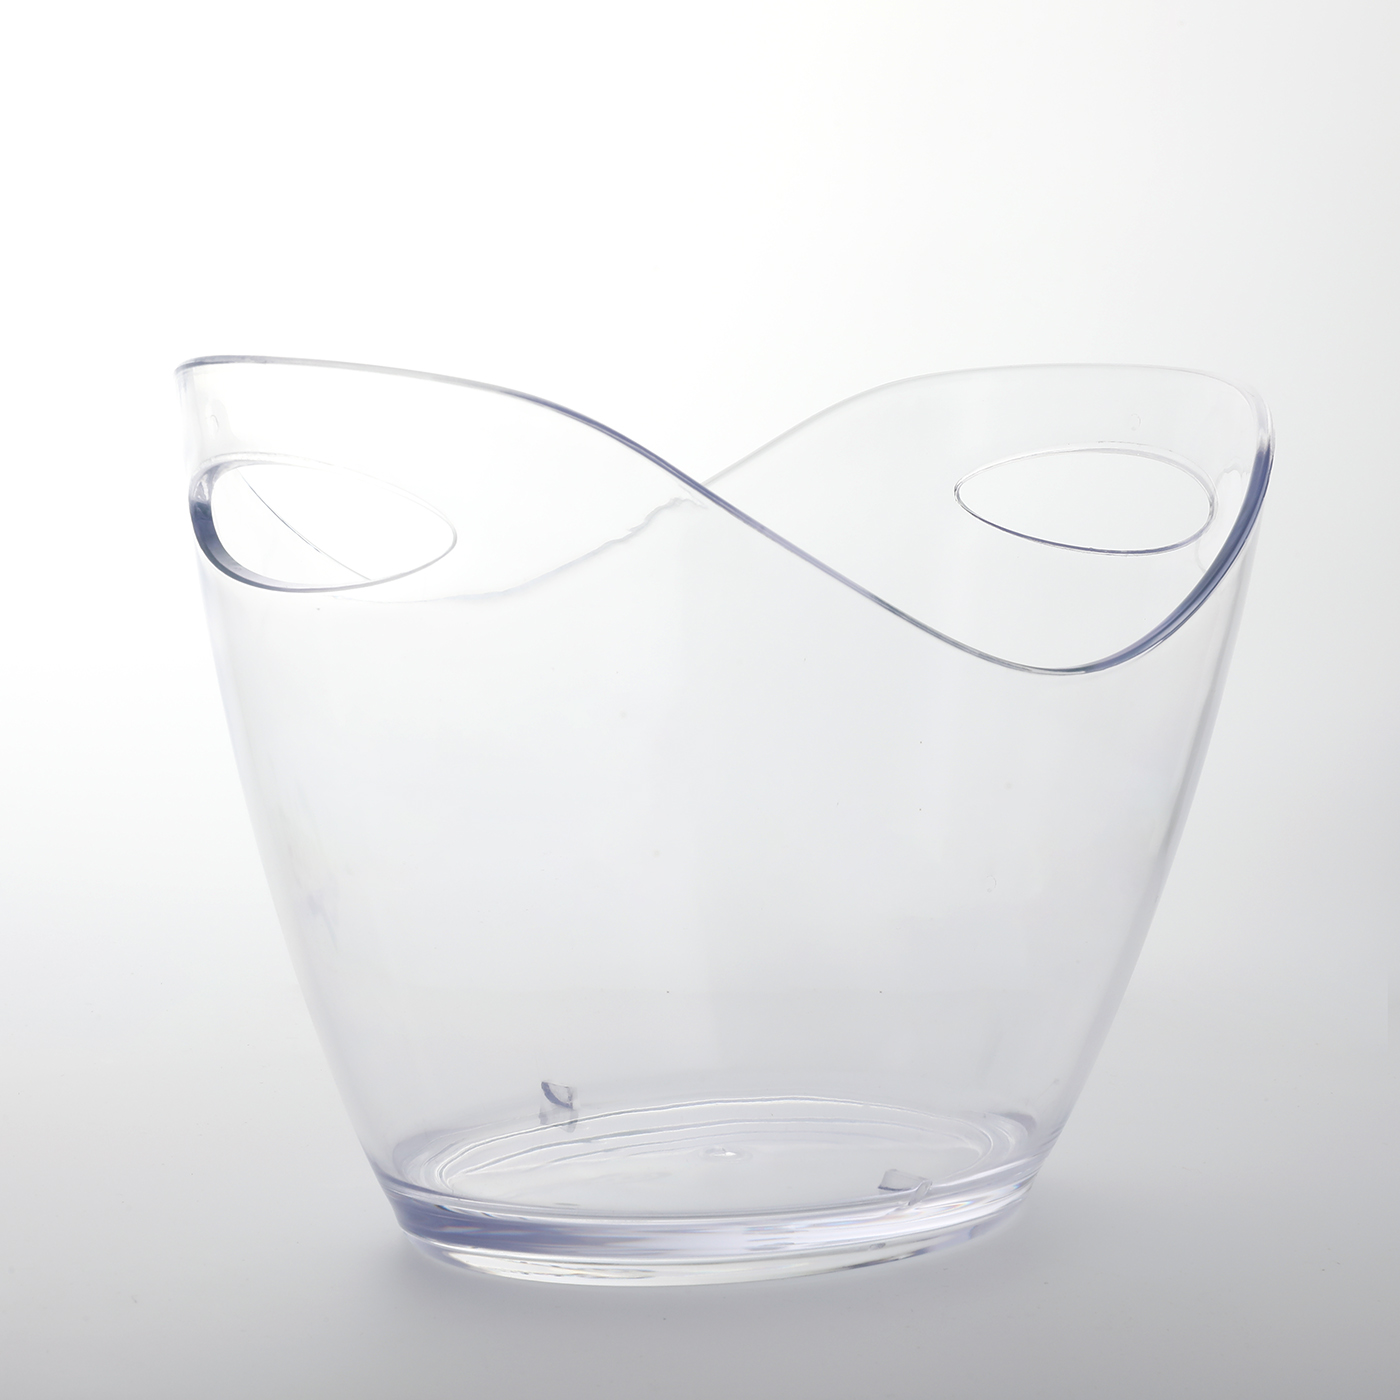 3.5L Ingot-shaped Ice Bucket3